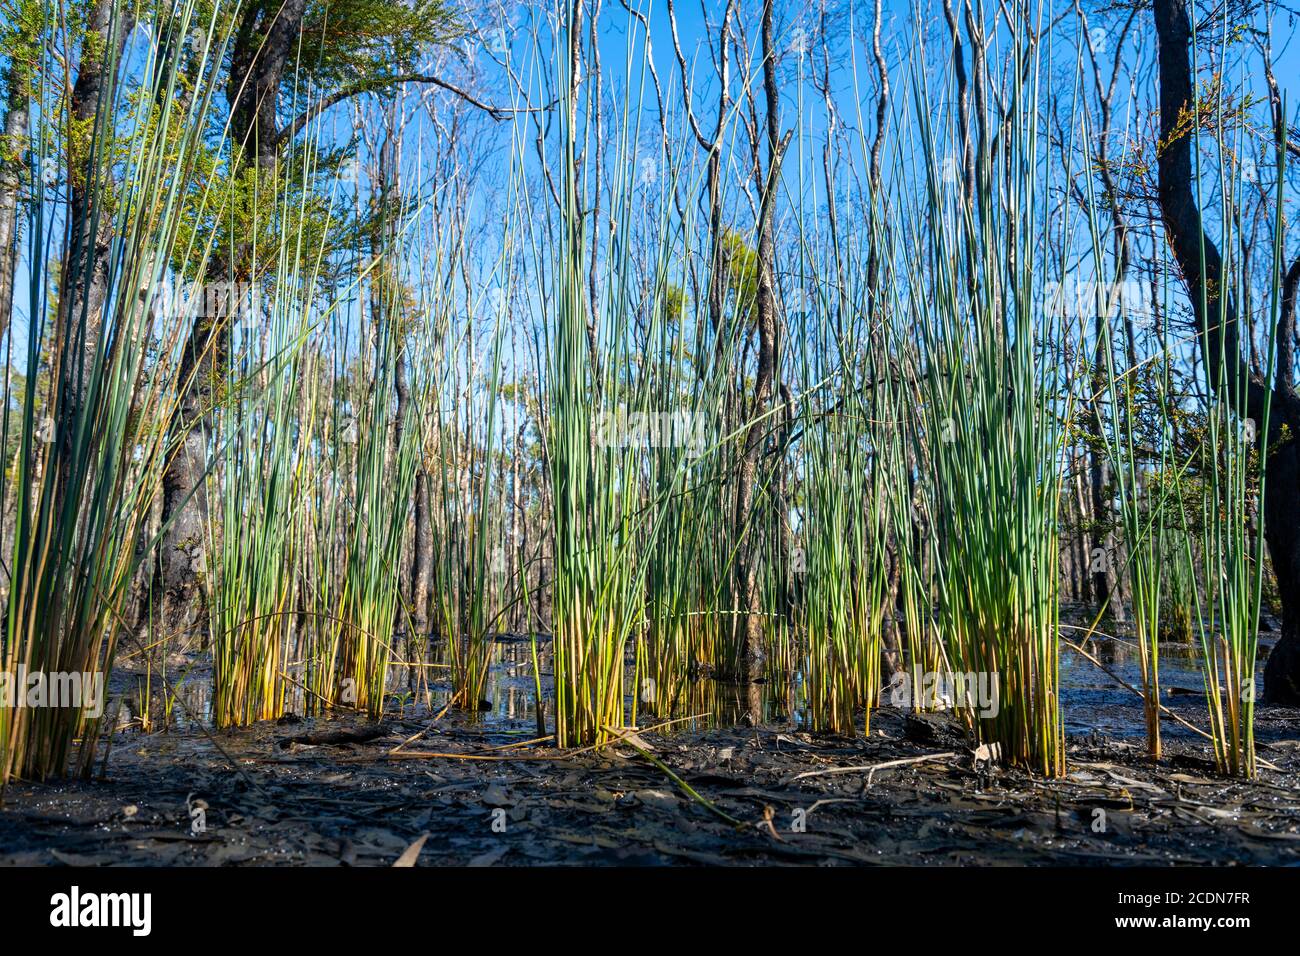 El nuevo crecimiento que aparece después de son ha sido devastado por los incendios forestales, Parque Nacional Burrum, Queensland, Australia Foto de stock